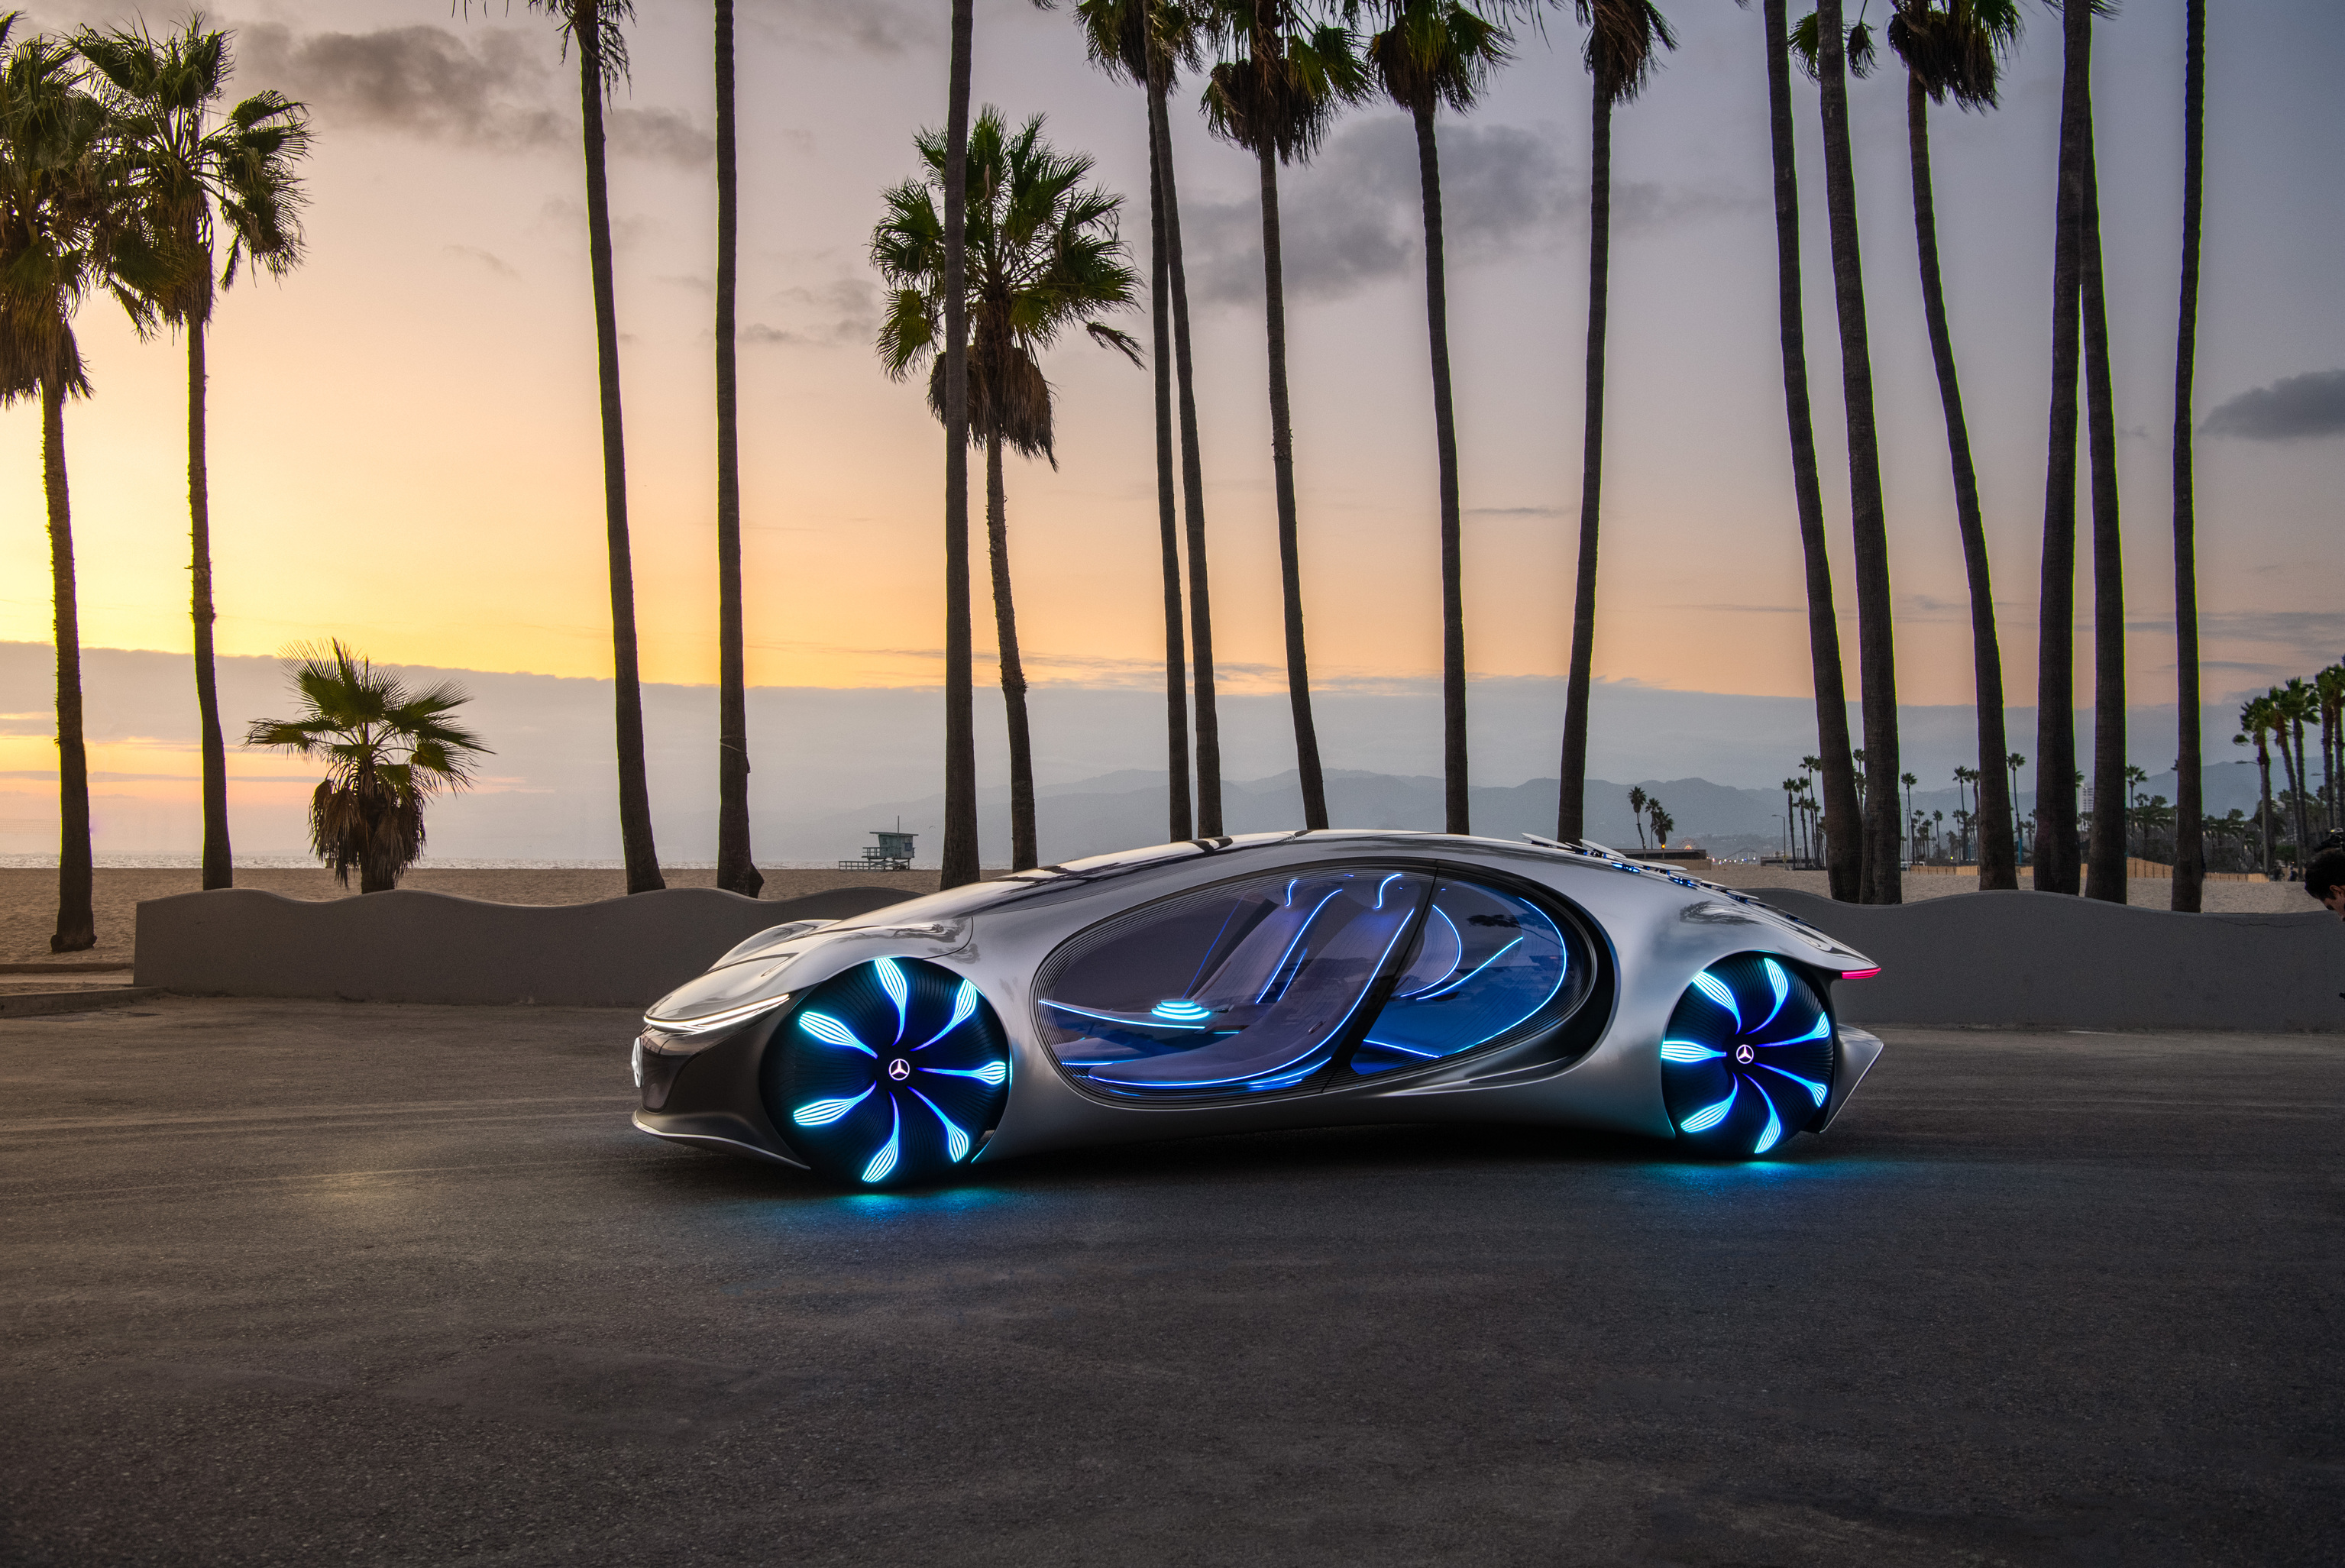 创建发想 ╳ 预览未来 以梦想雕琢的概念车